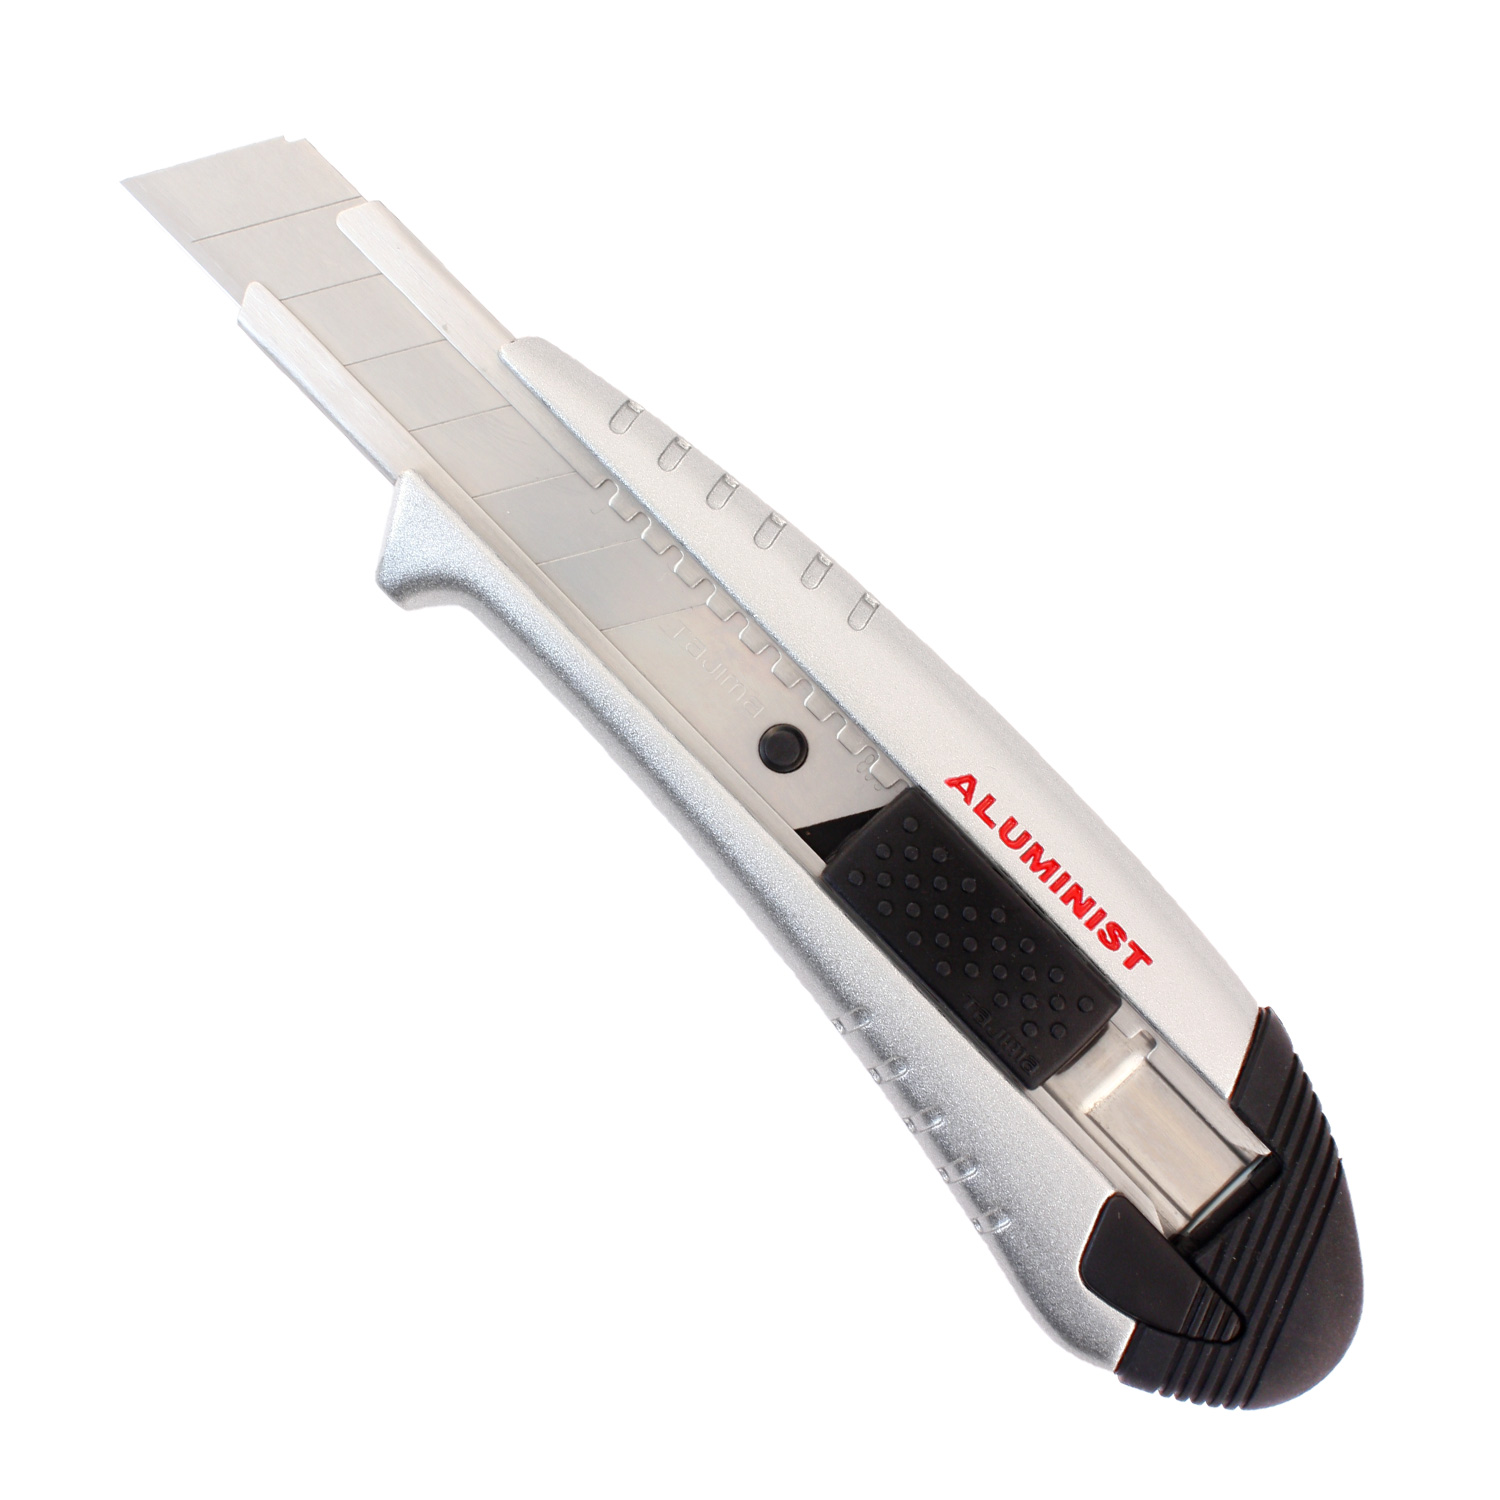 1 Tajima Premium Cuttermesser aus Japan Aluminist 18mm